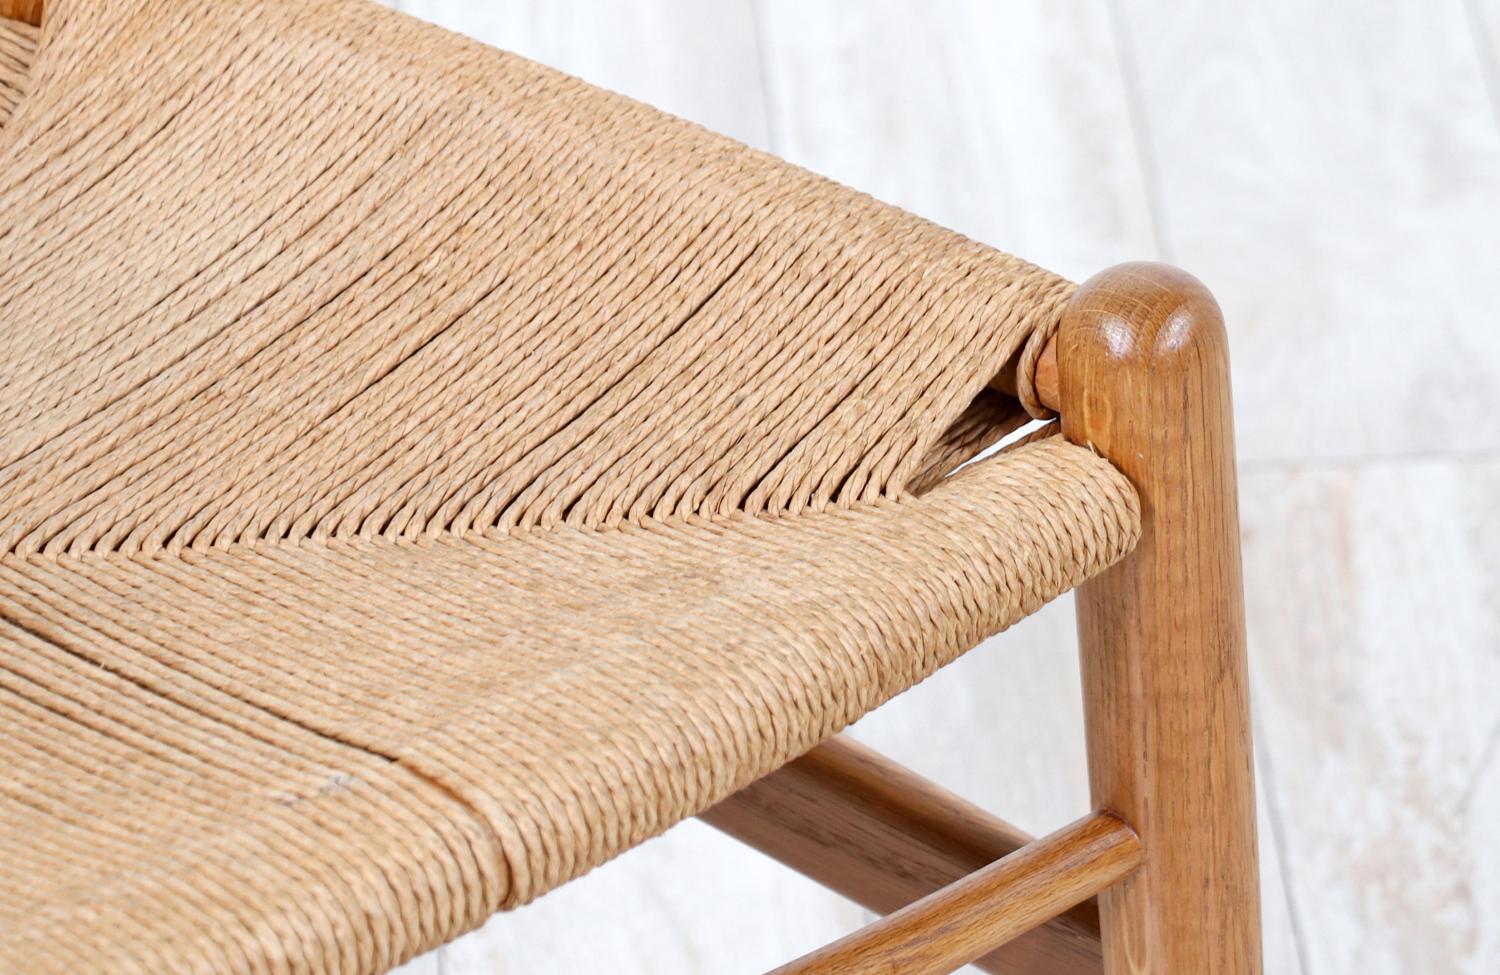 Iconic Hans J. Wegner “Wishbone” Oak Arm Chair for Carl Hansen & Søn For Sale 5